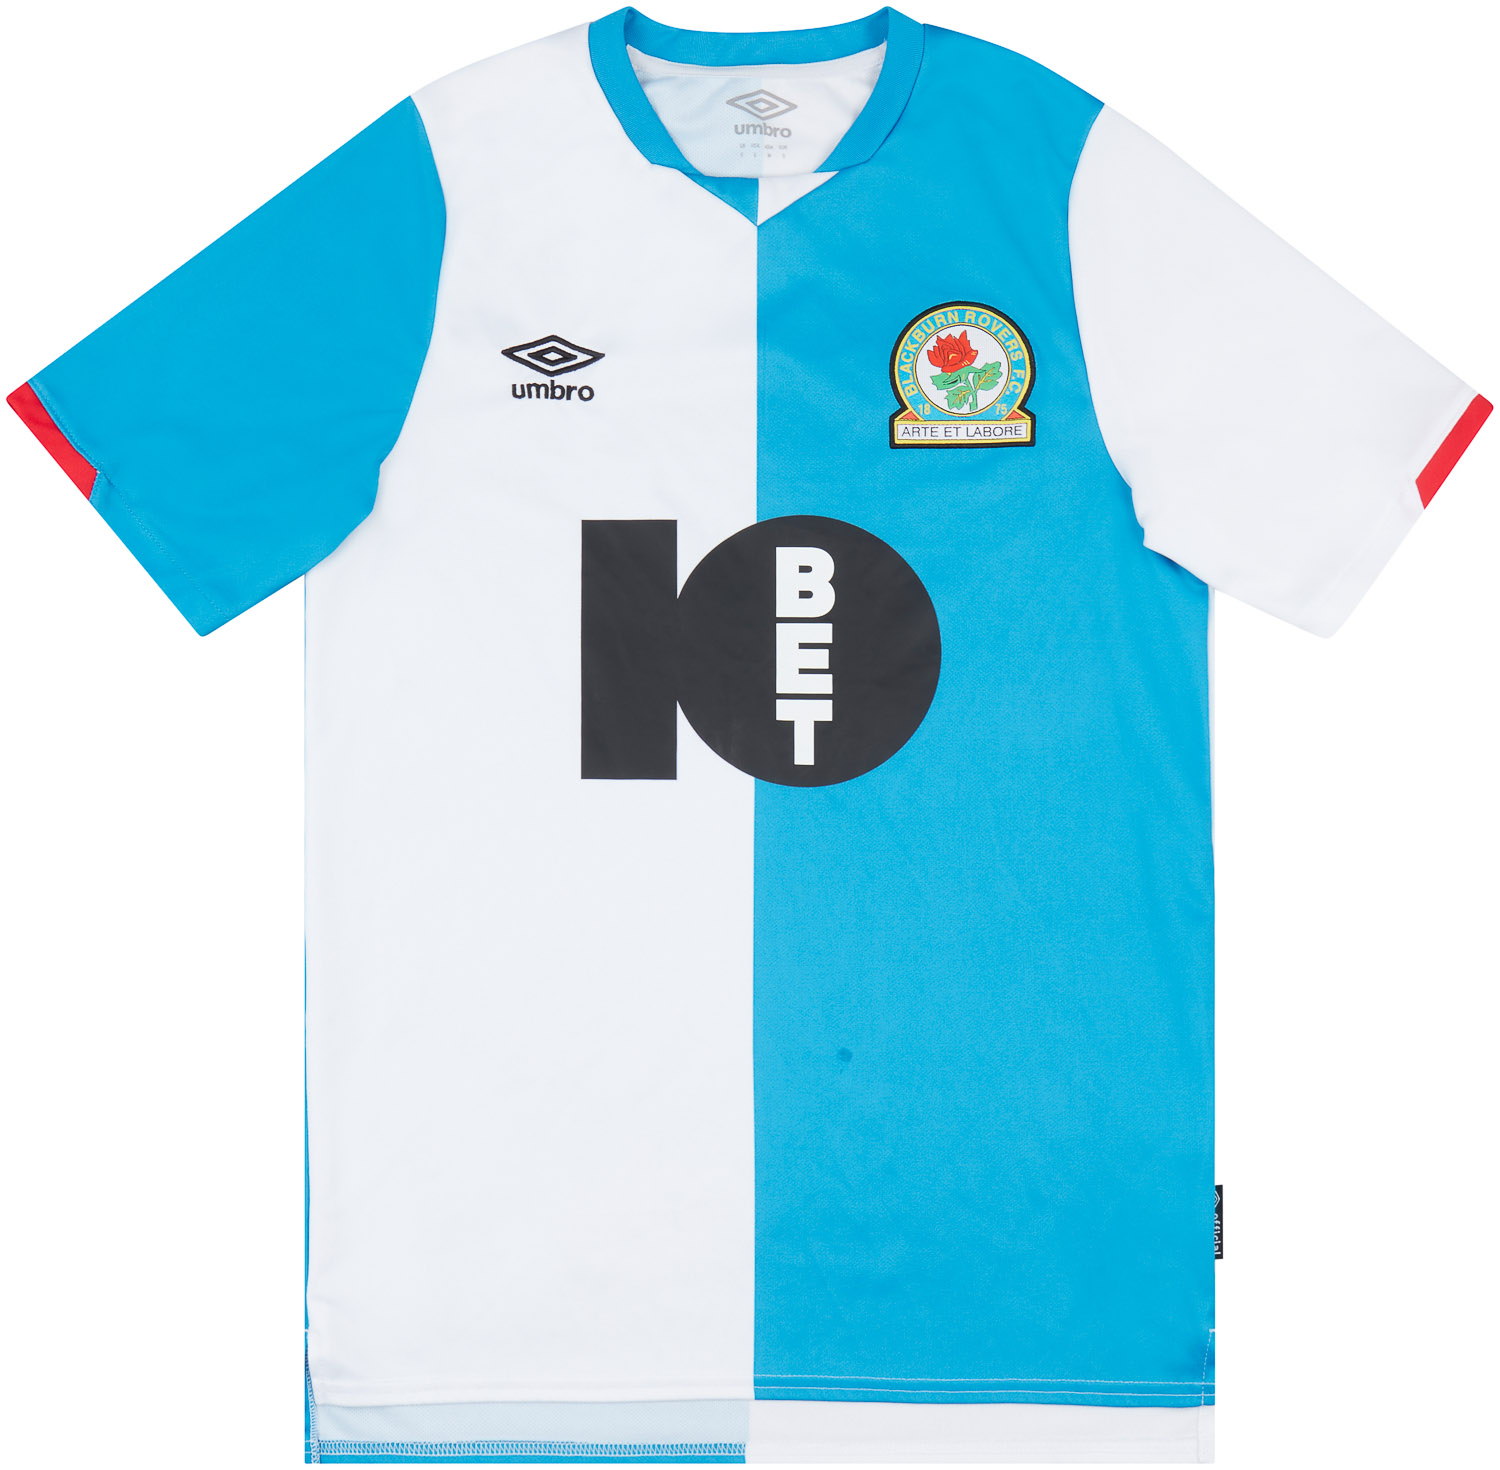 Blackburn Rovers  home camisa (Original)